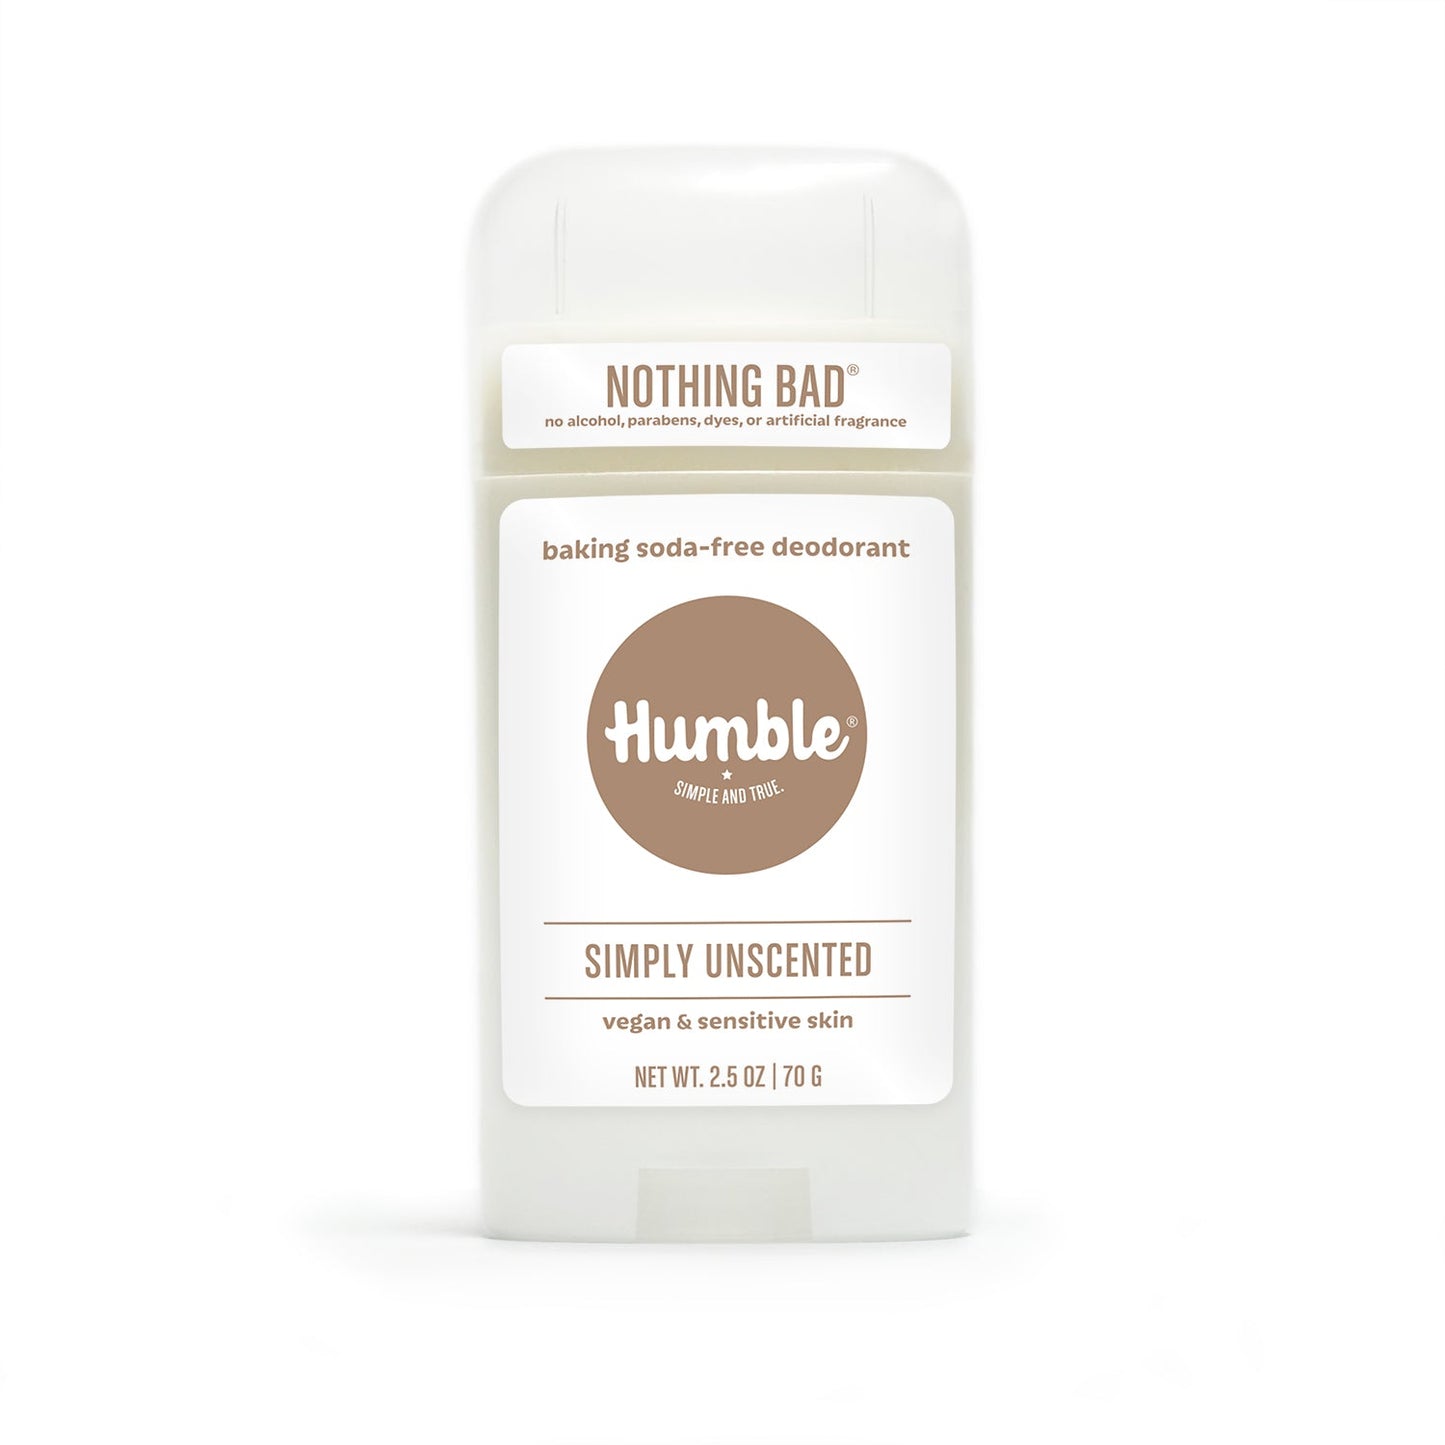 Sensitive Skin/Vegan Simply Unscented Deodorant